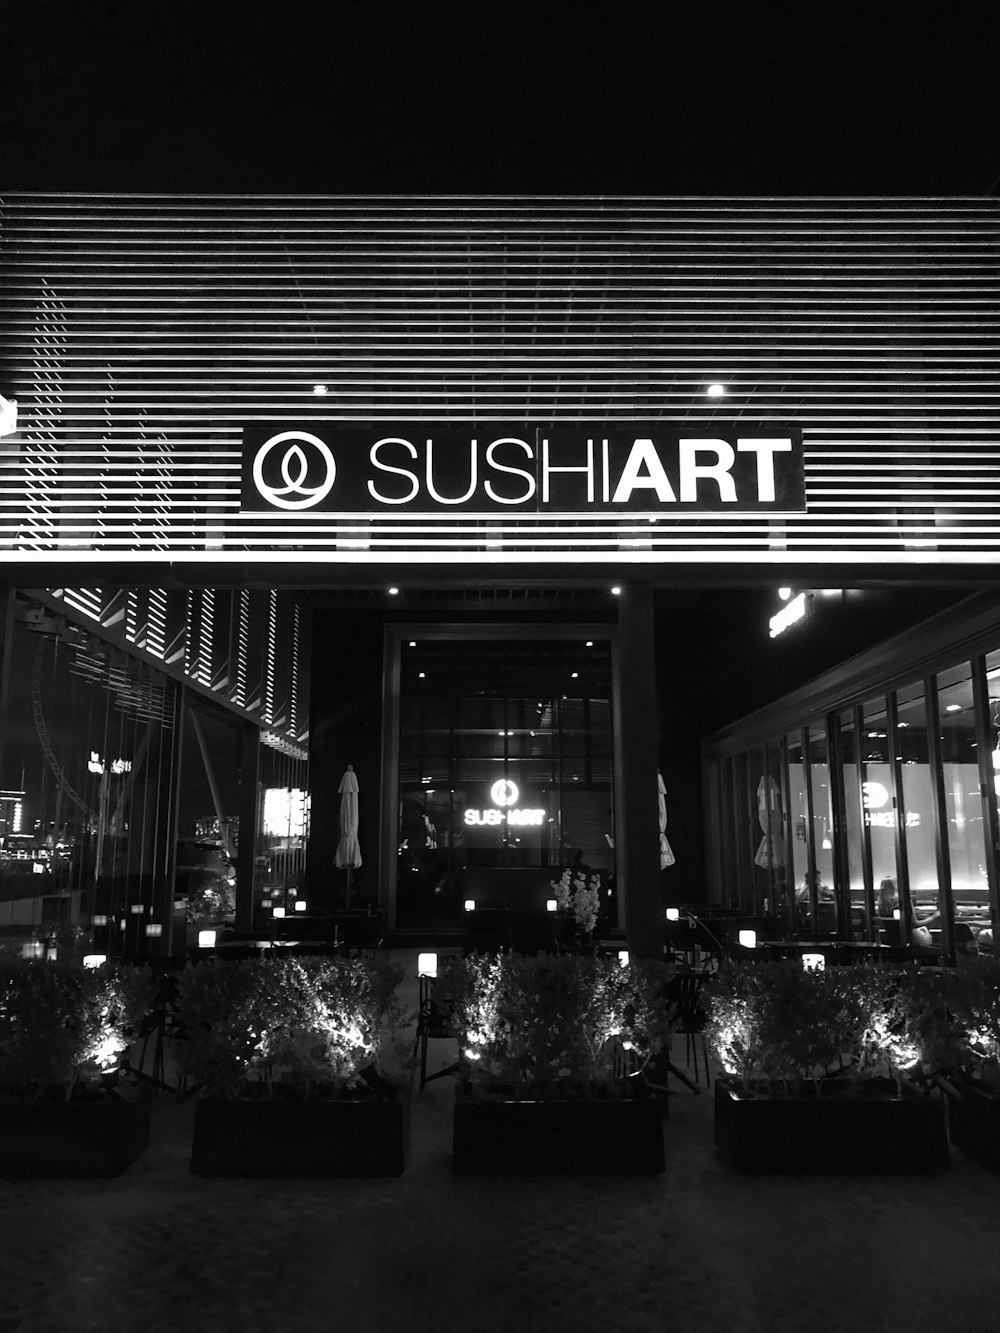 Sushi Art Restaurant auf Graustufenfoto